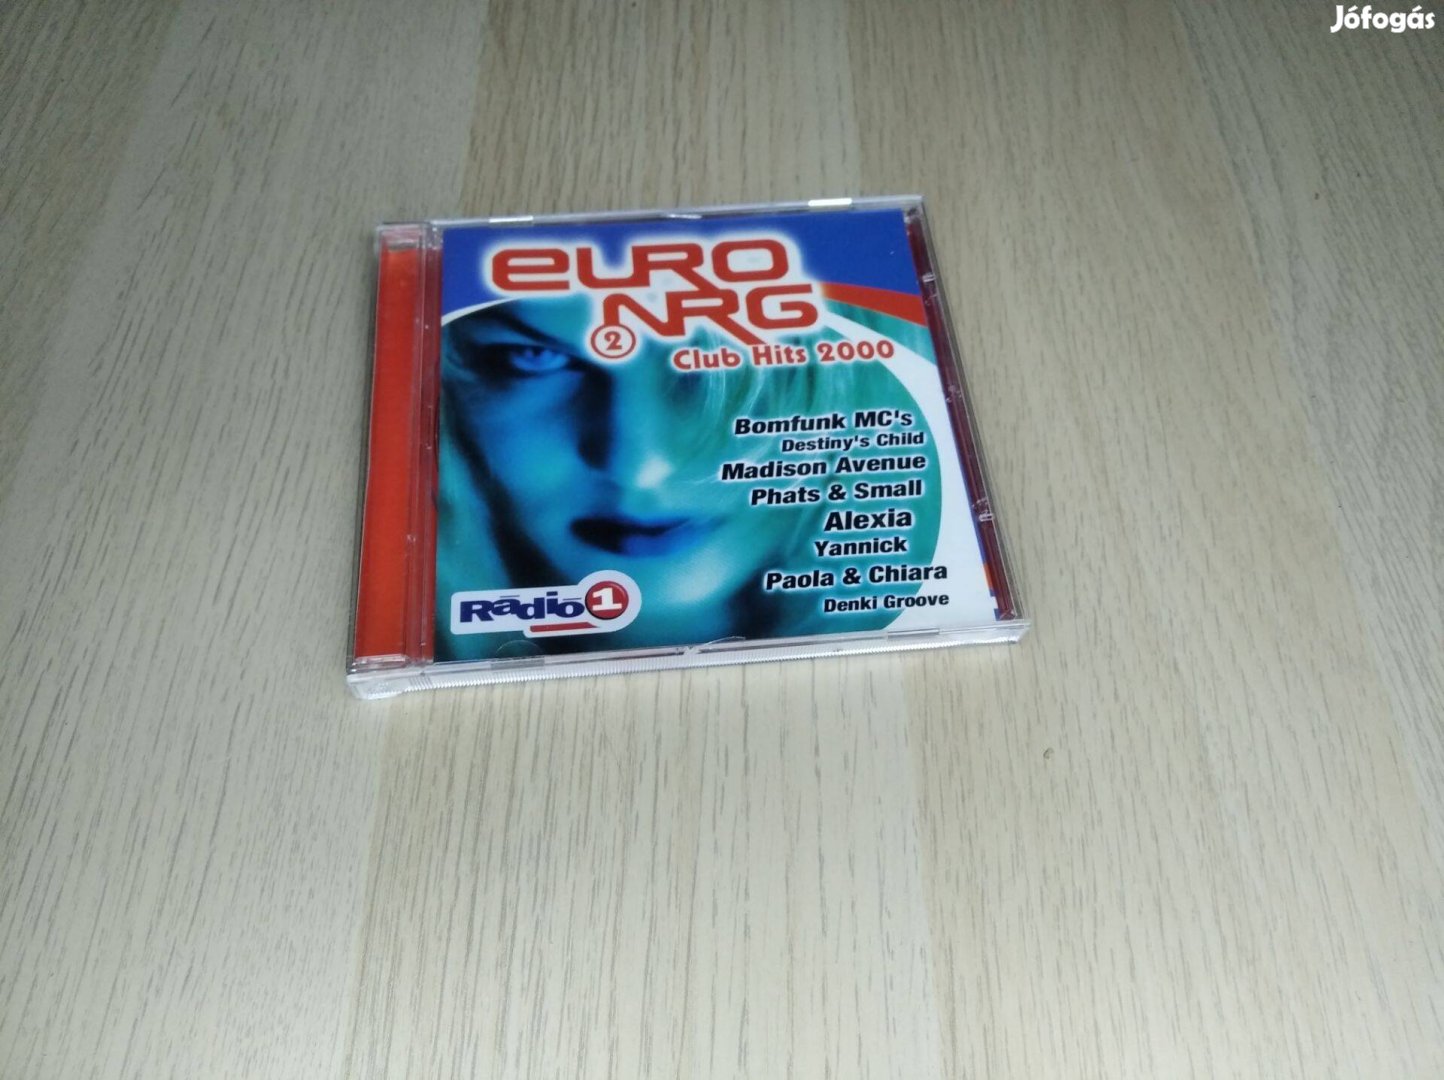 Euro Nrg 2 - Club Hits 2000 / CD